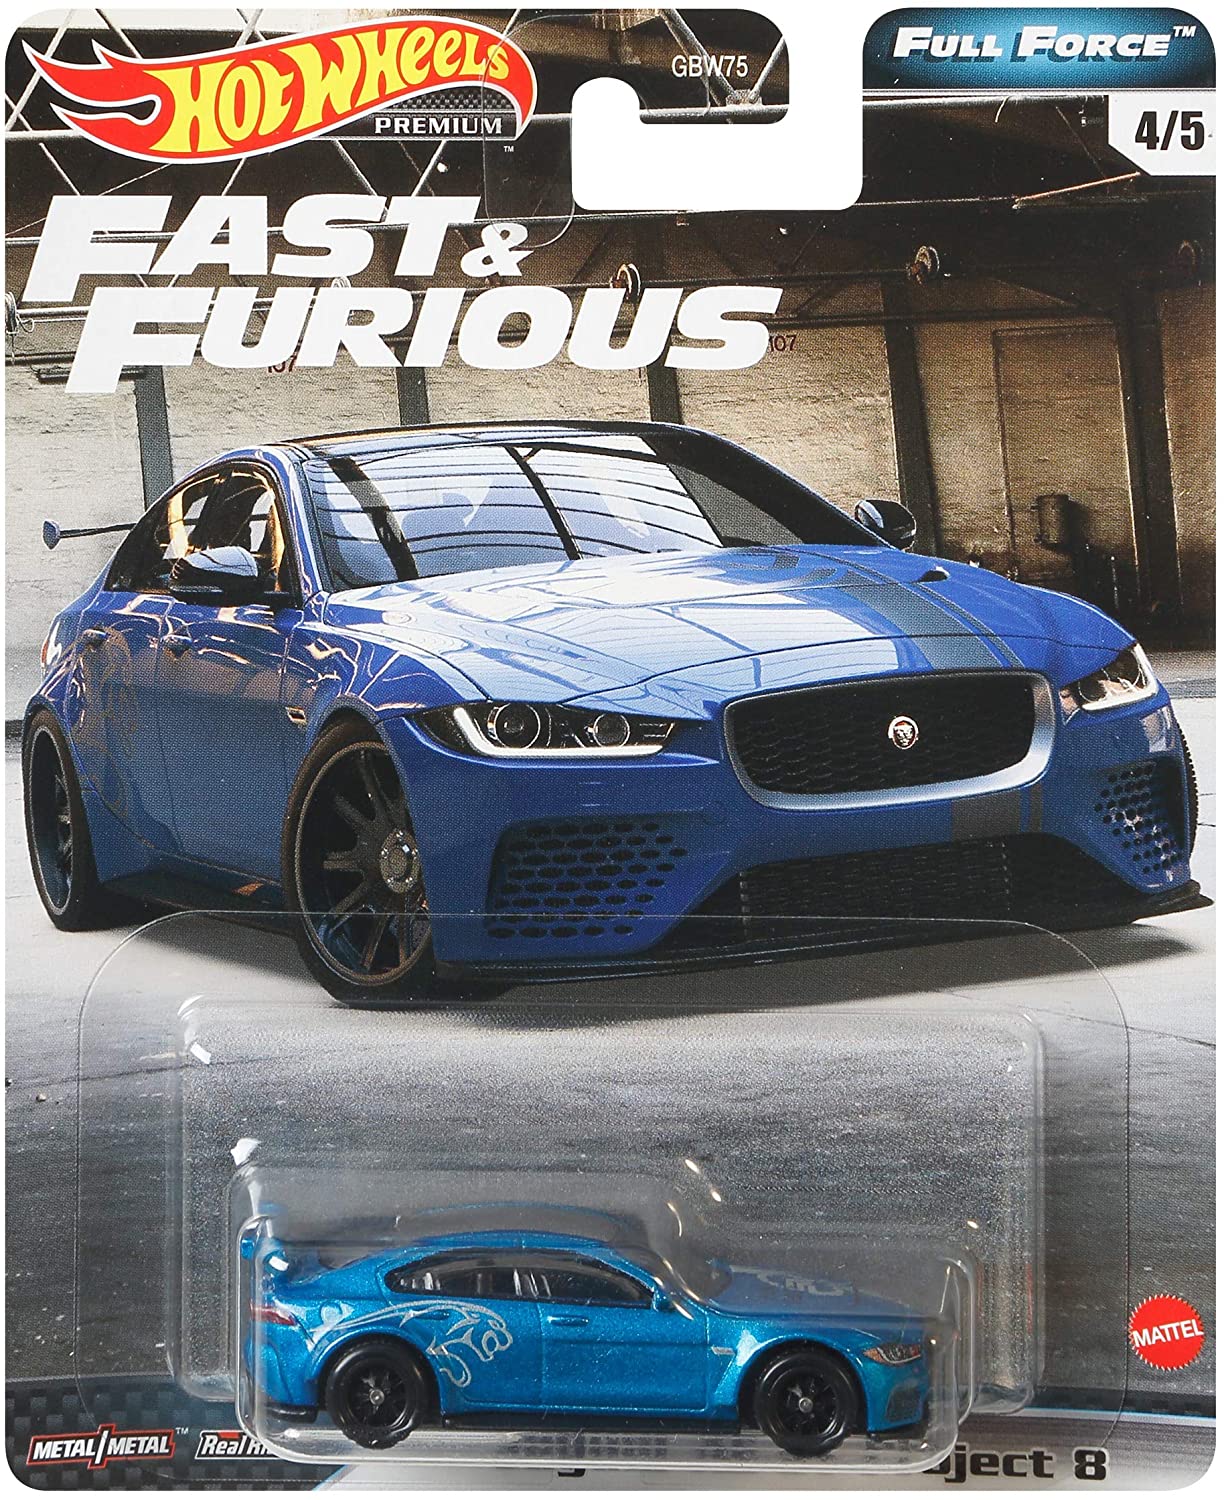 Hot Wheels Fast & Furious Full Force Box Set 1:64